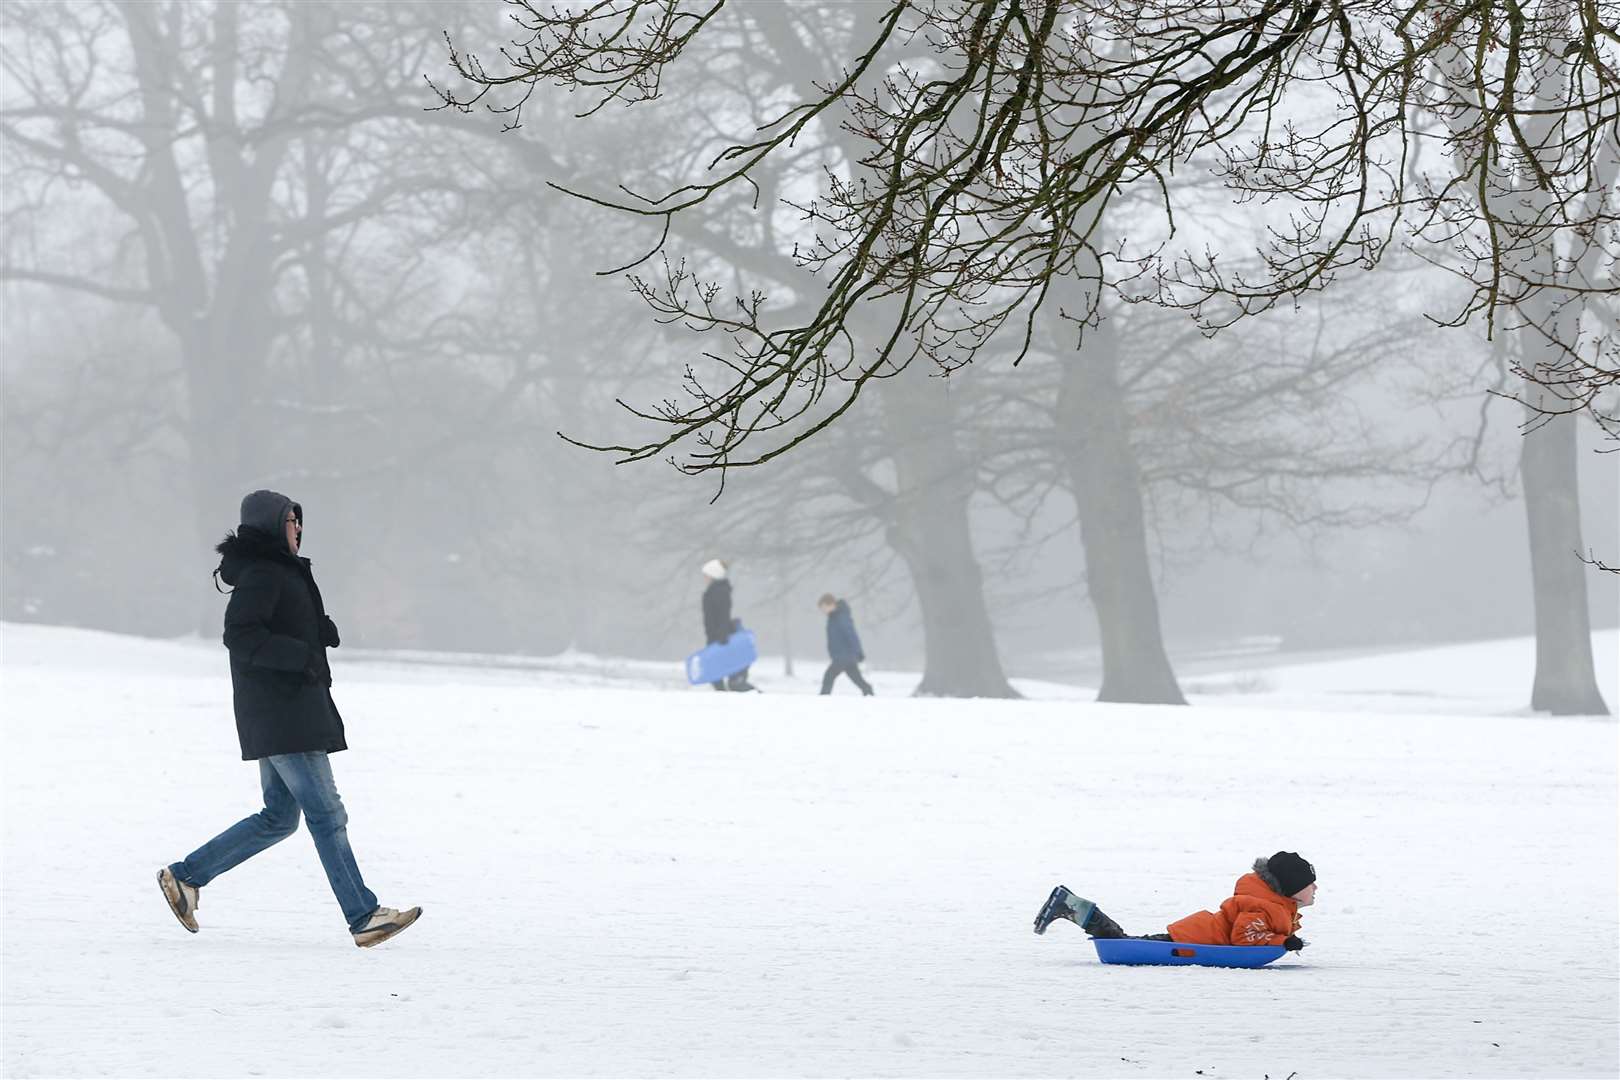 Snow scenes and sledging at Dunorlan Park, Tunbridge Wells in 2018. Picture: Matthew Walker